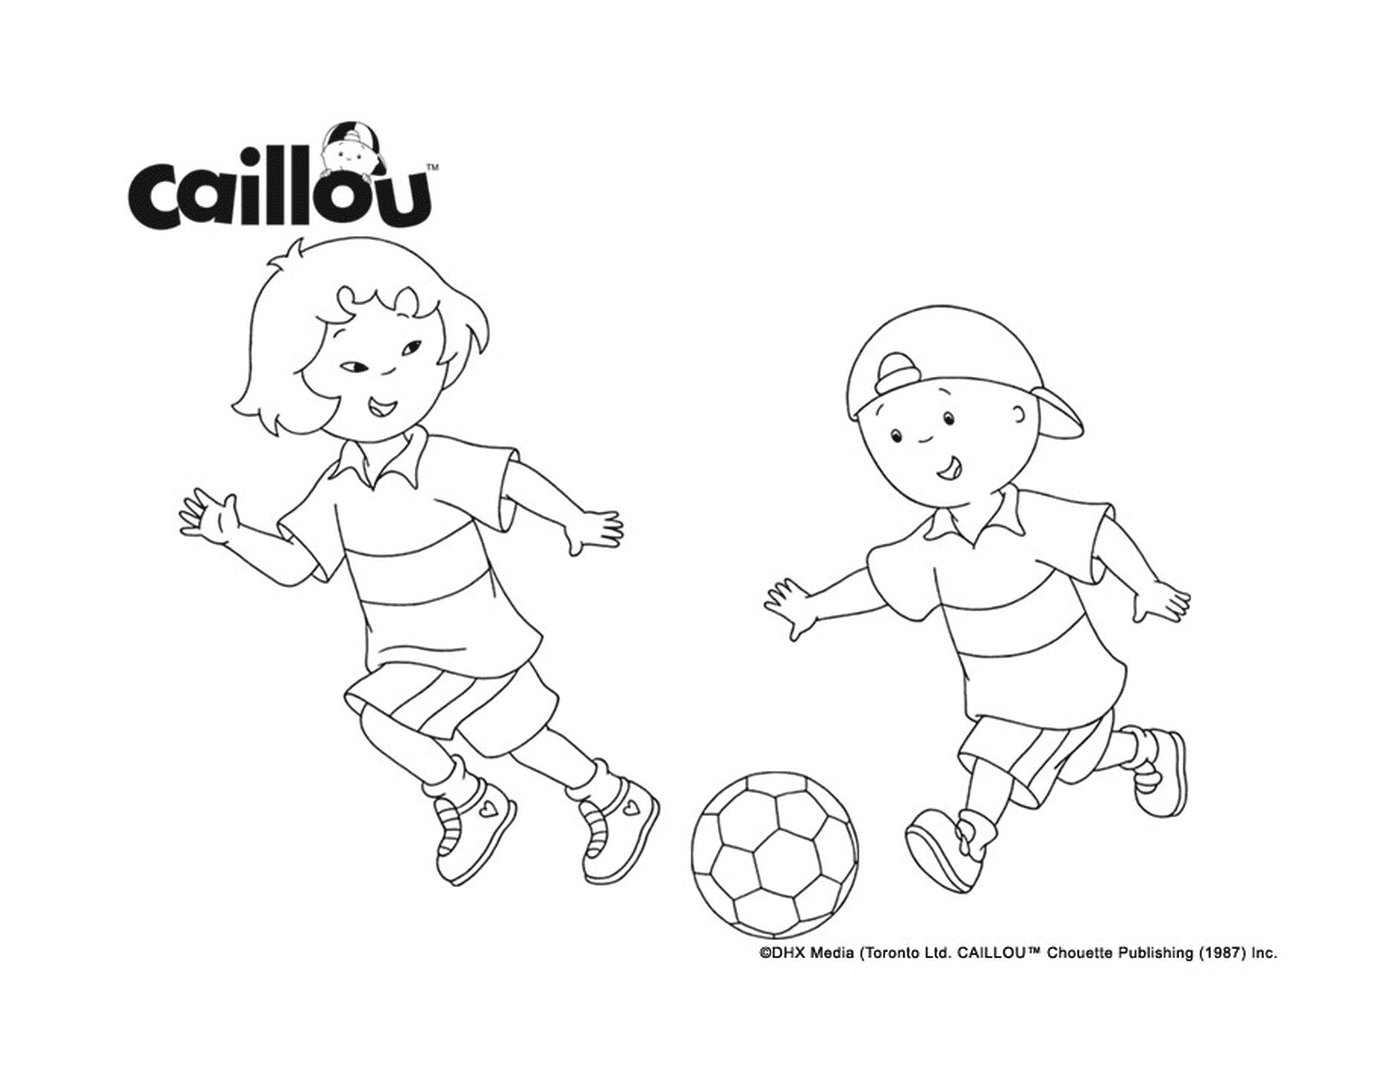  كالو وسارة يلعبان كرة القدم للإعداد لكأس العالم لكرة القدم 